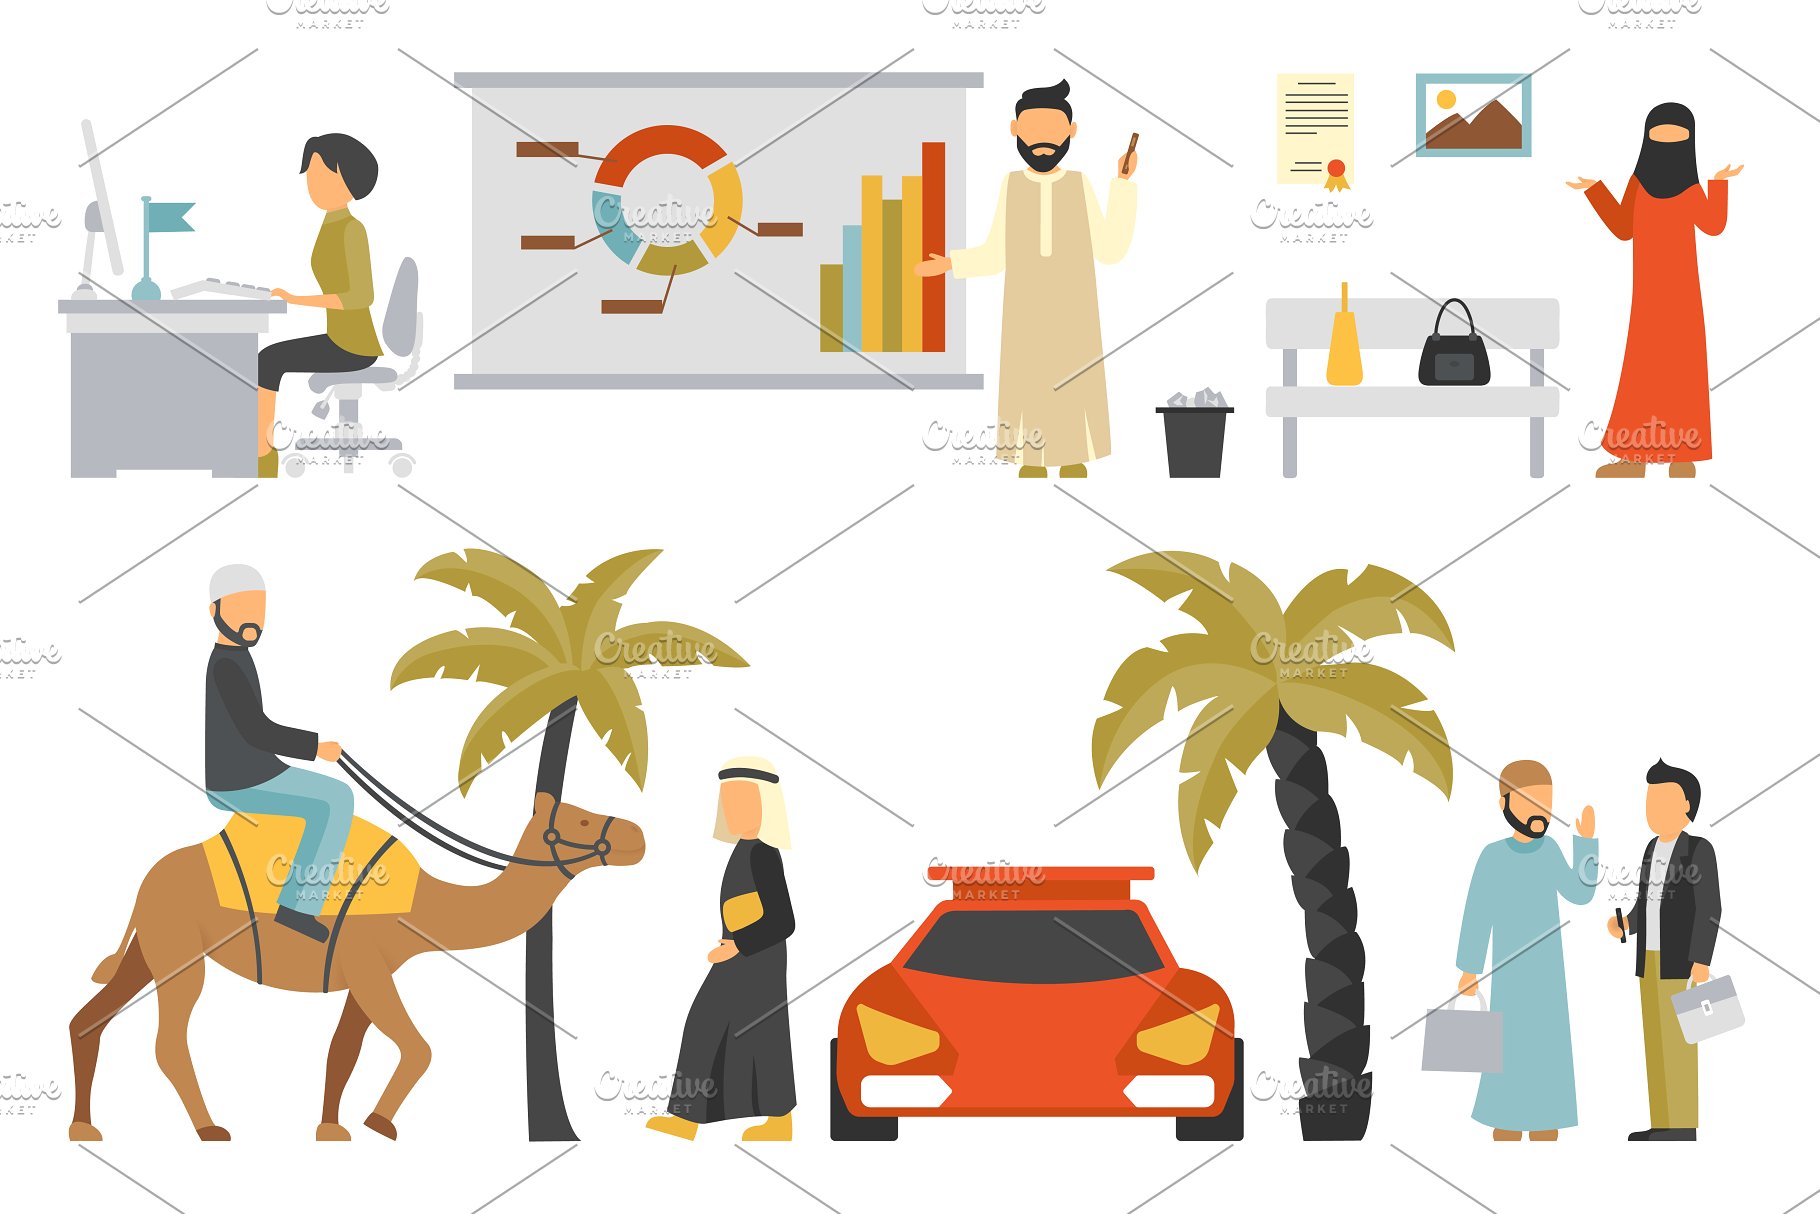 迪拜人物风情扁平化设计插画 Dubai – flat people set插图(9)